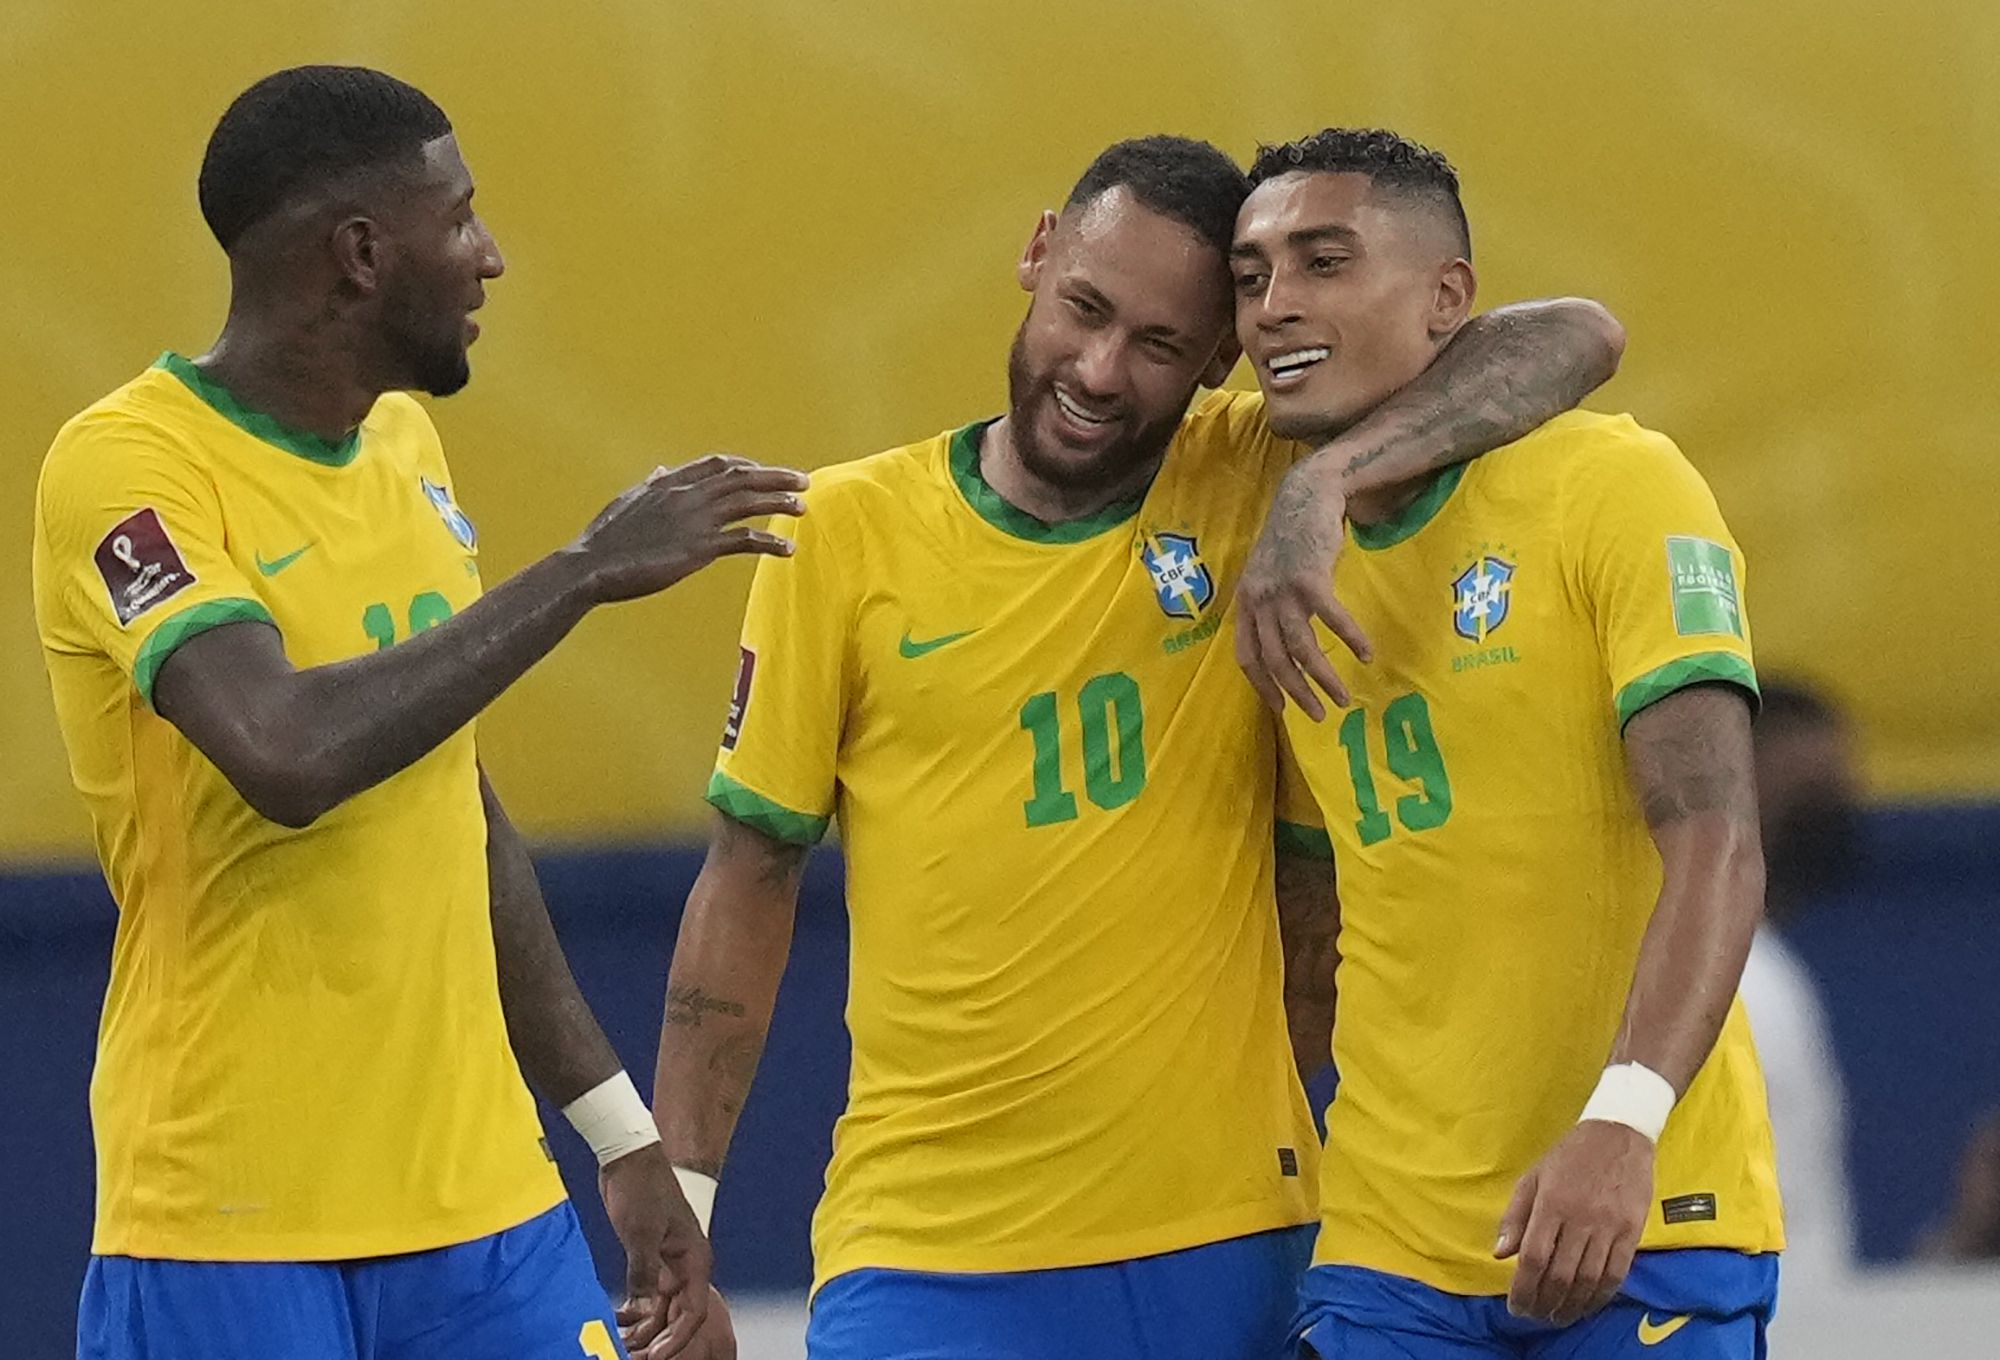 Persahabatan Internasional: Neymar akan menjadi starter untuk Brasil dalam pertandingan persahabatan melawan Jepang, Magalhaes dan Ederson akan absen, Ikuti Streaming Langsung Jepang vs Brasil, Periksa Berita Tim